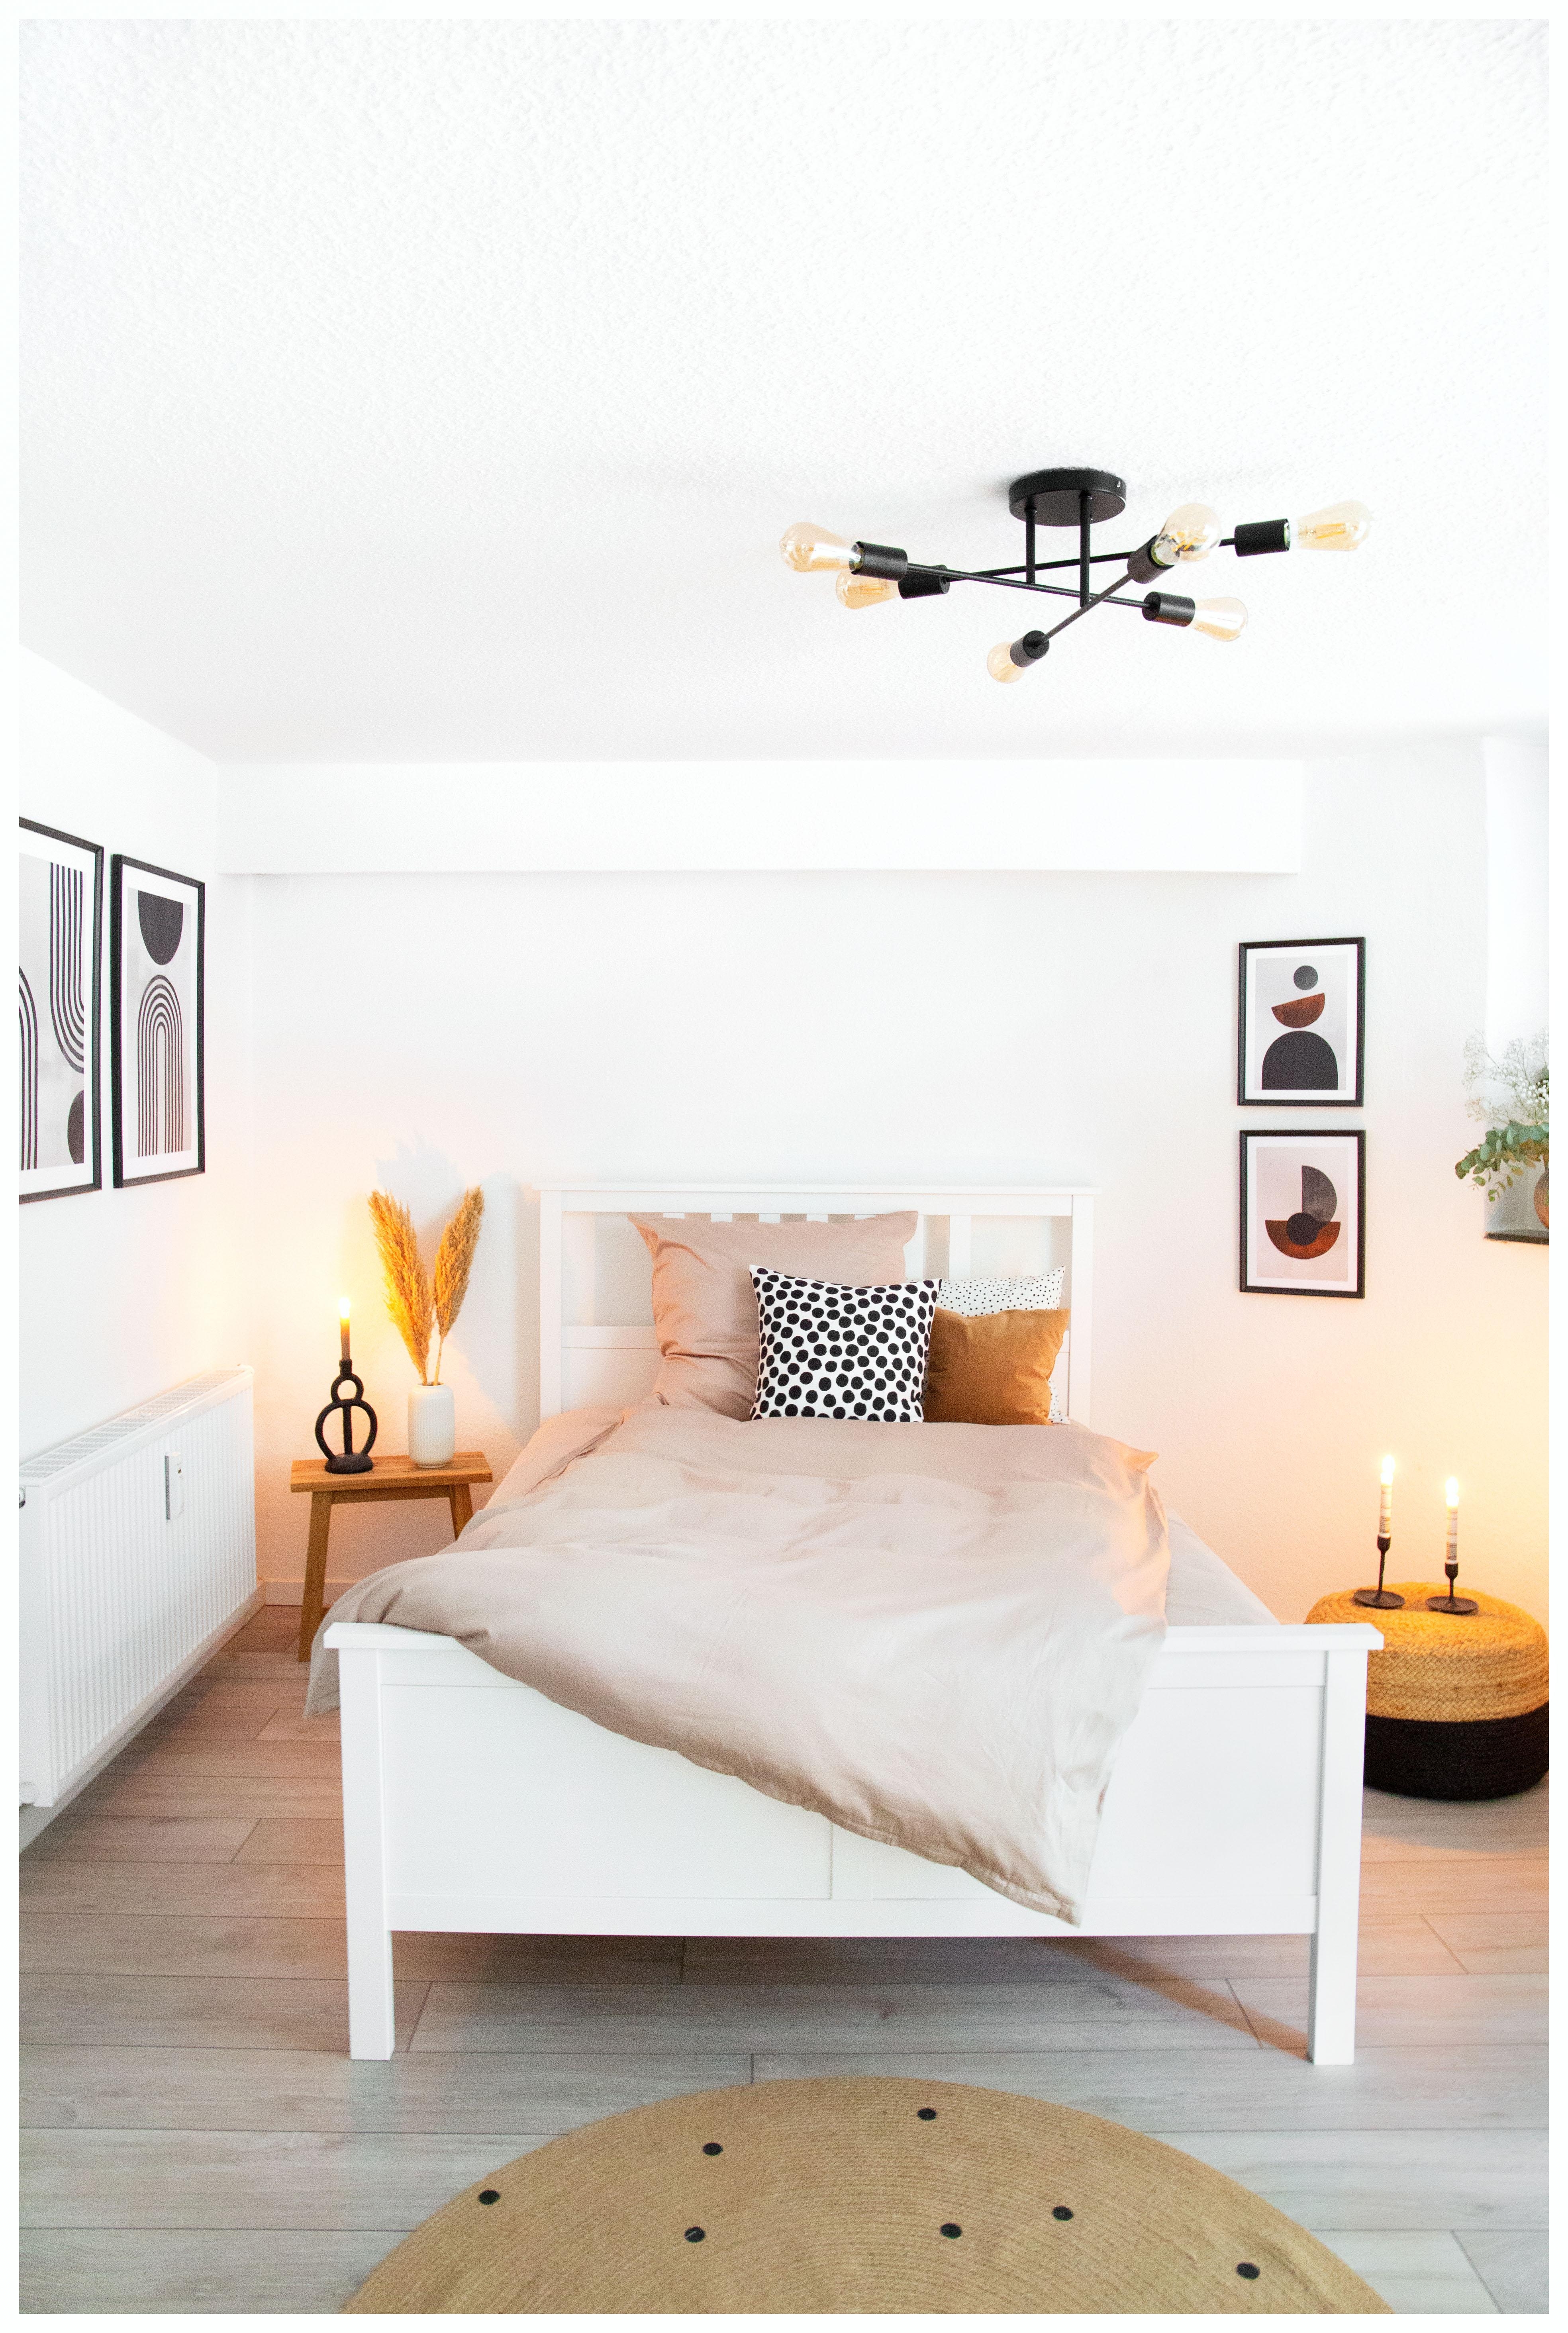 Mein Schlafzimmer - Kleine Räume gemütlich einrichten mag ich sehr! #couch #schlafzimmer #cozy 